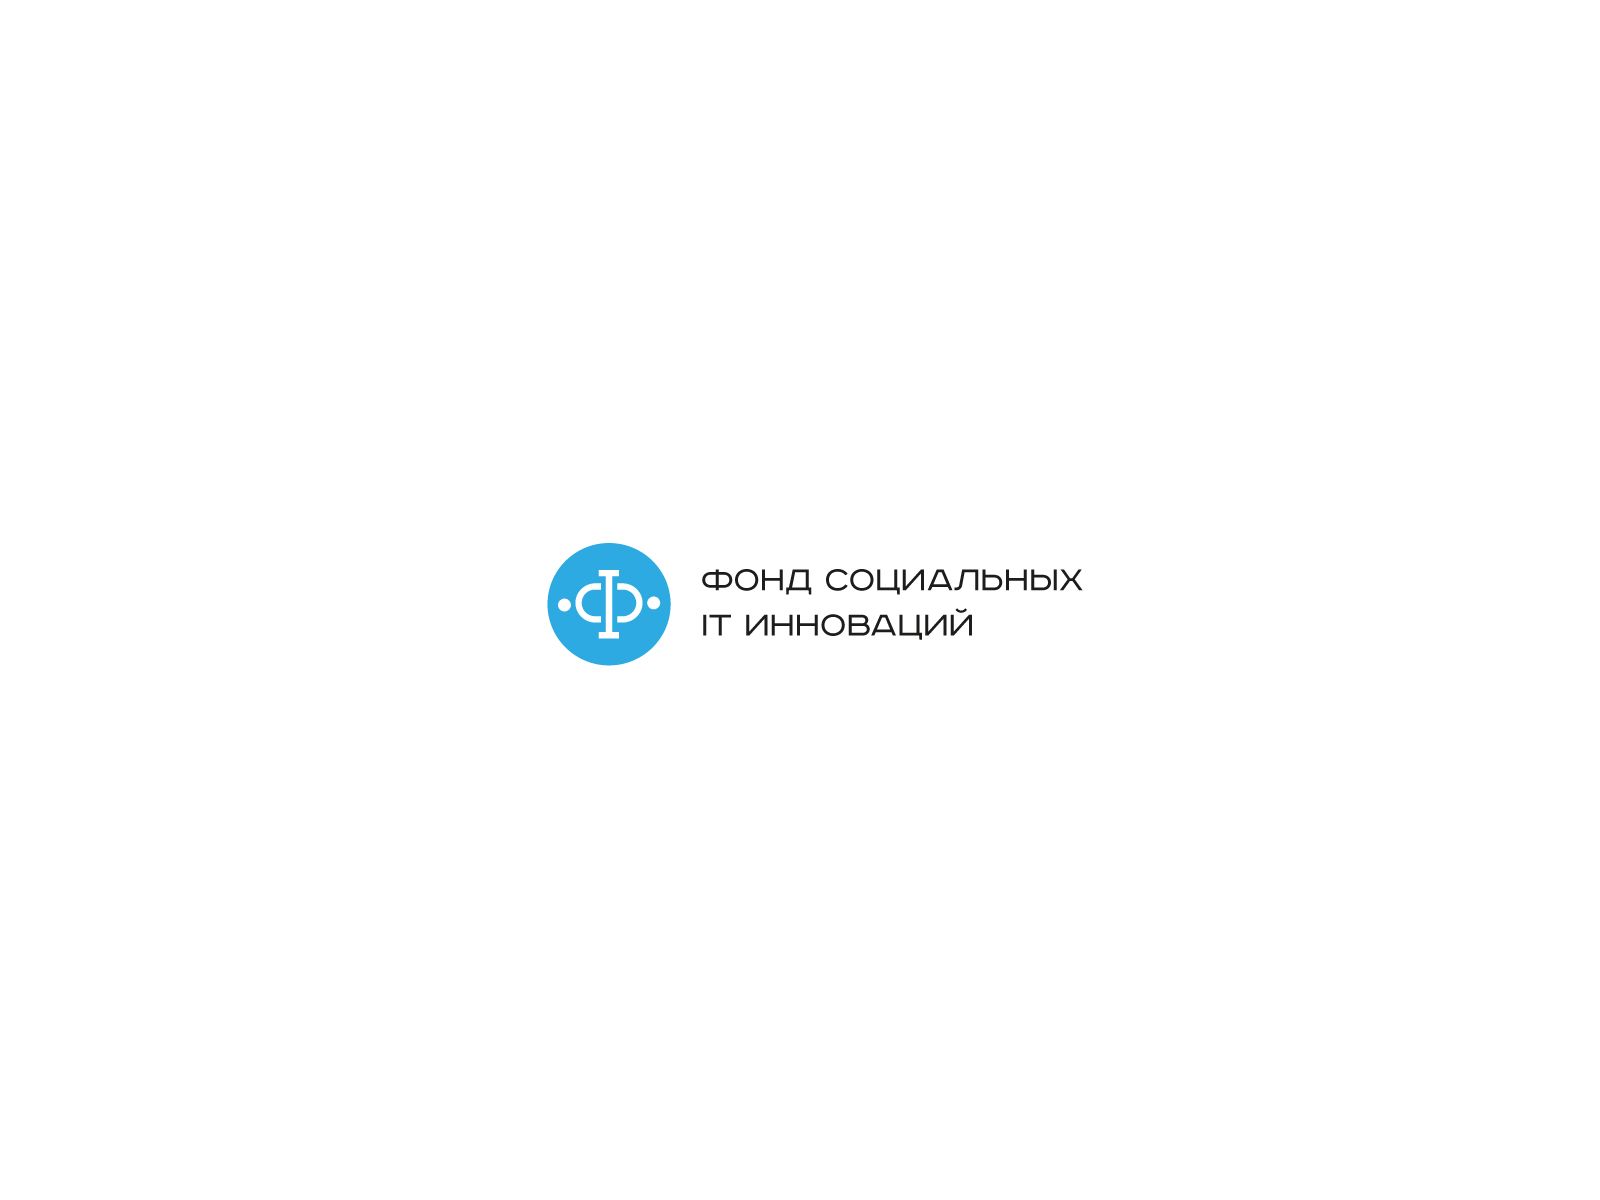 Логотип для ФСИТИ - Фонд Социальных IT Инноваций  - дизайнер U4po4mak